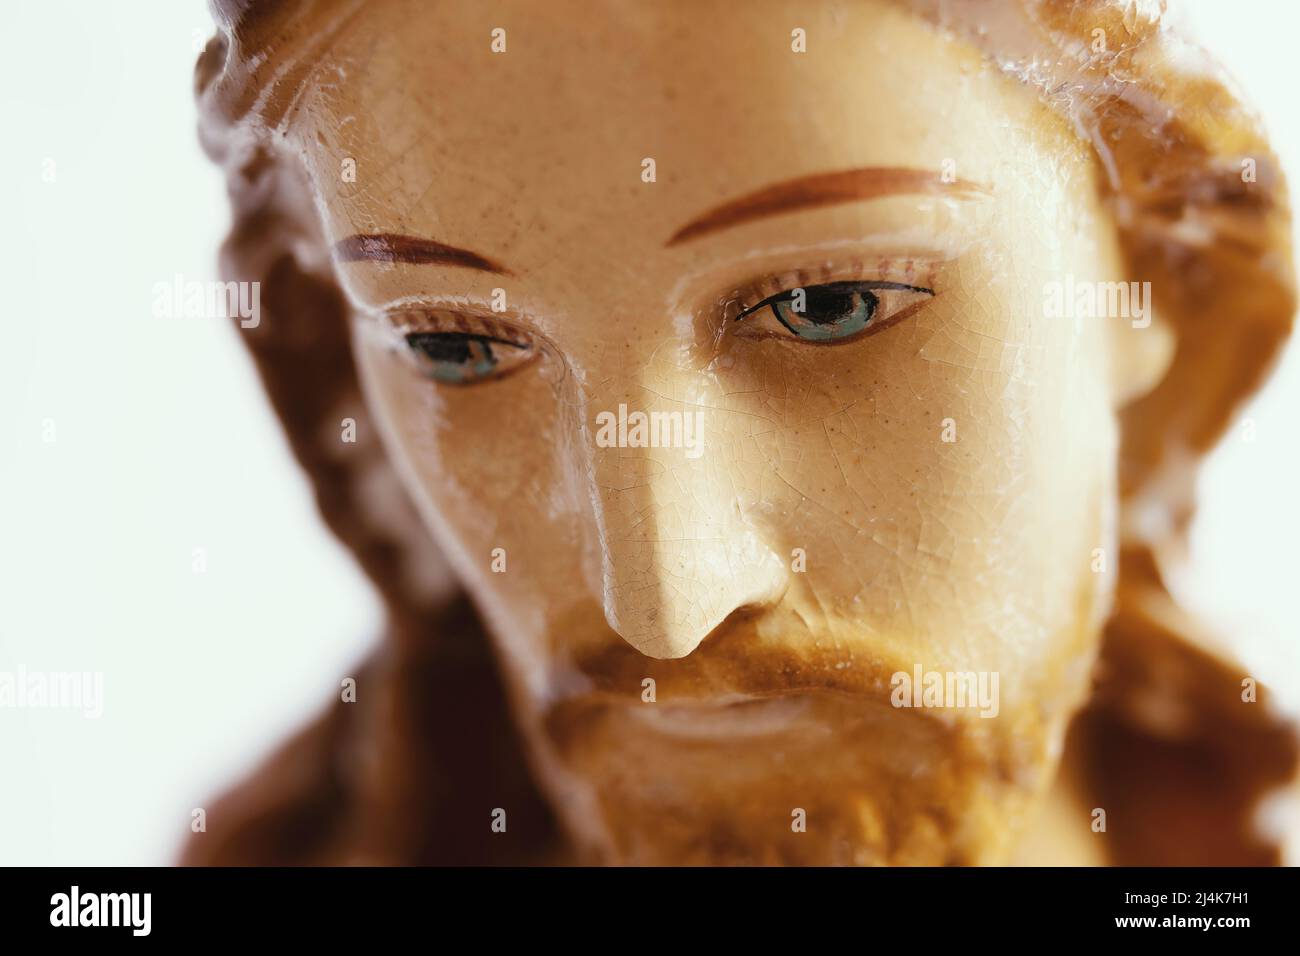 Cara de Jesús mirando hacia abajo, de cerca. Retrato de una pequeña estatua de Jesucristo o figurilla hecha de porcelana o arcilla con rasgos pintados. Foto de stock